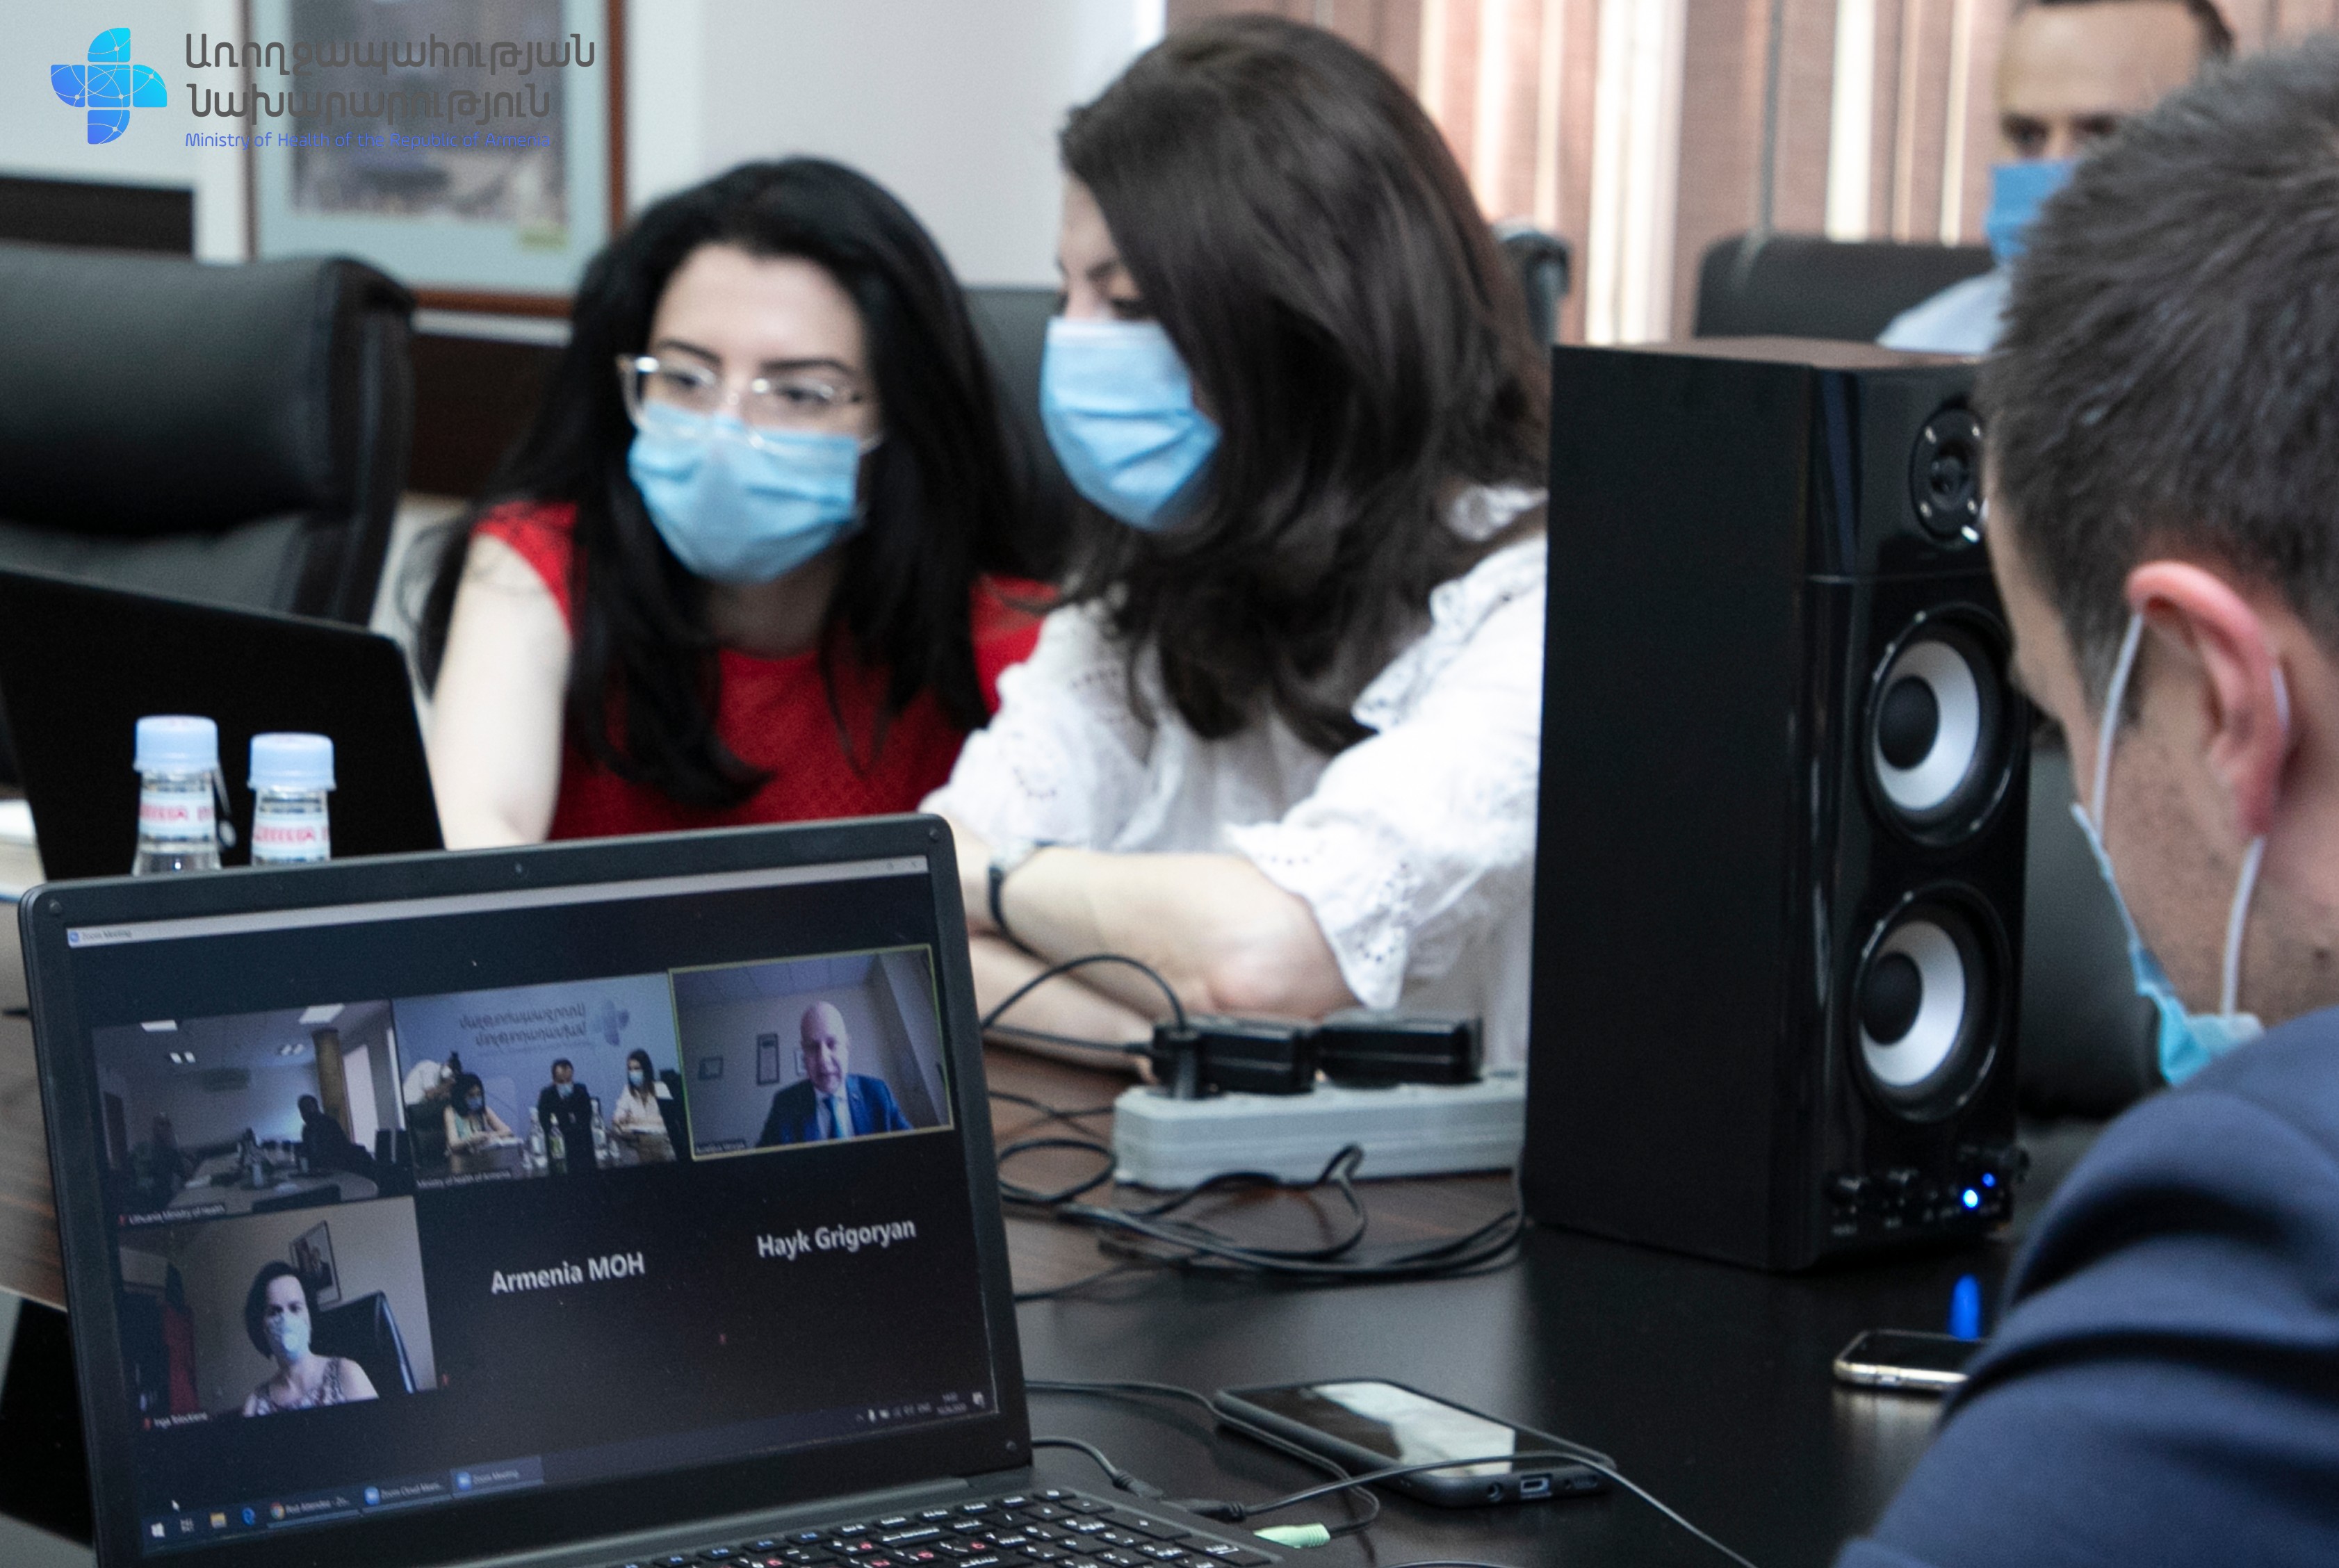 Հունիսի 19-ին Հայաստան կժամանի Լիտվացի մասնագետների թիմը` 8 բուժաշխատող, 3 փորձագետ․ Տեսազրույց Լիտվայի առողջապահության նախարարի հետ